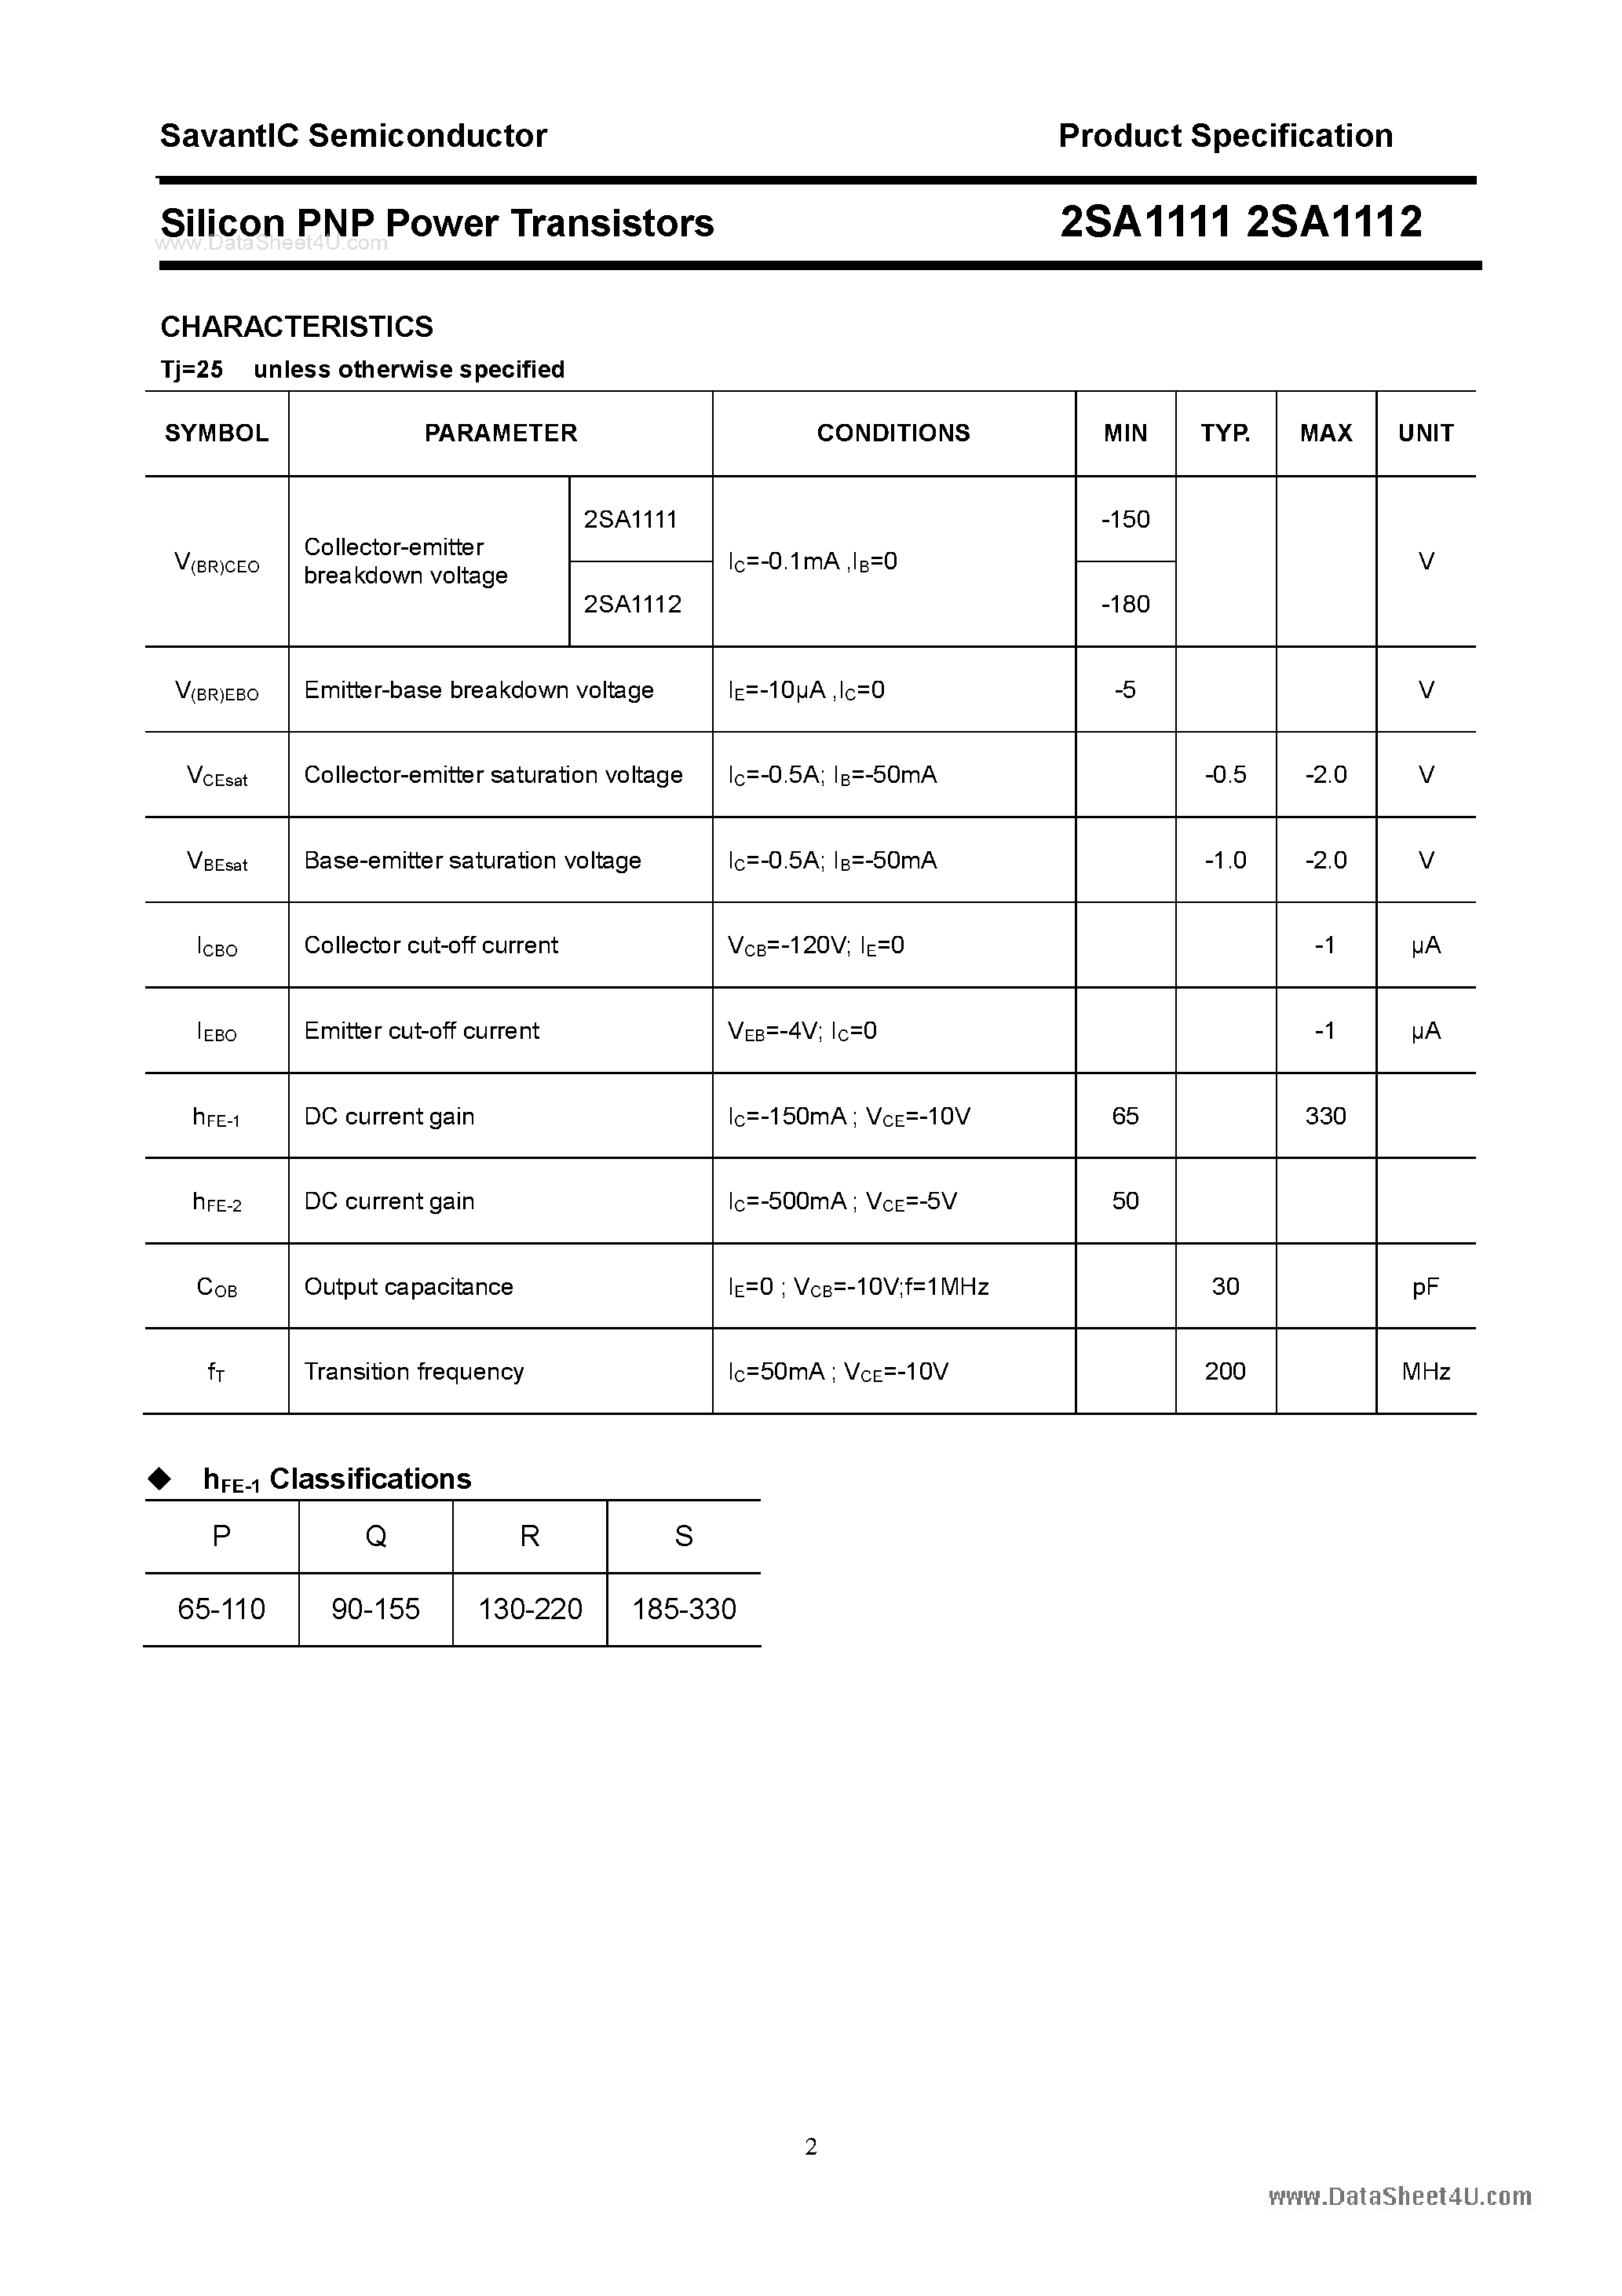 Datasheet 2SA1112 - (2SA1111 / 2SA1112) SILICON POWER TRANSISTOR page 2